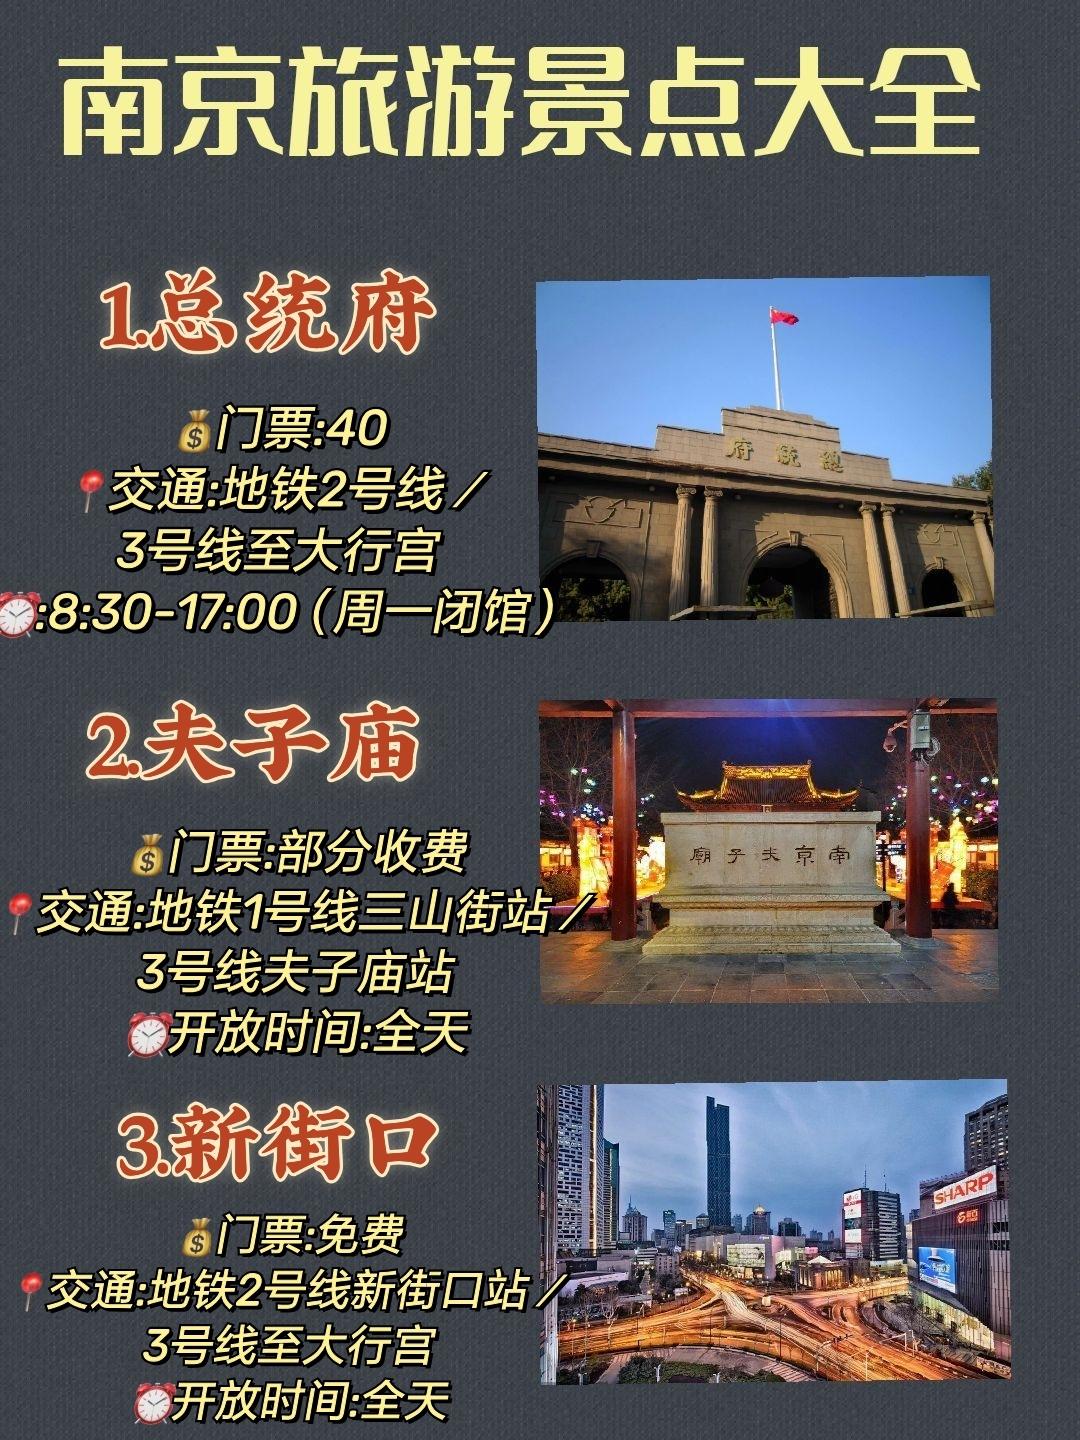 南京旅游攻略景点门票南京行李寄存南京美食